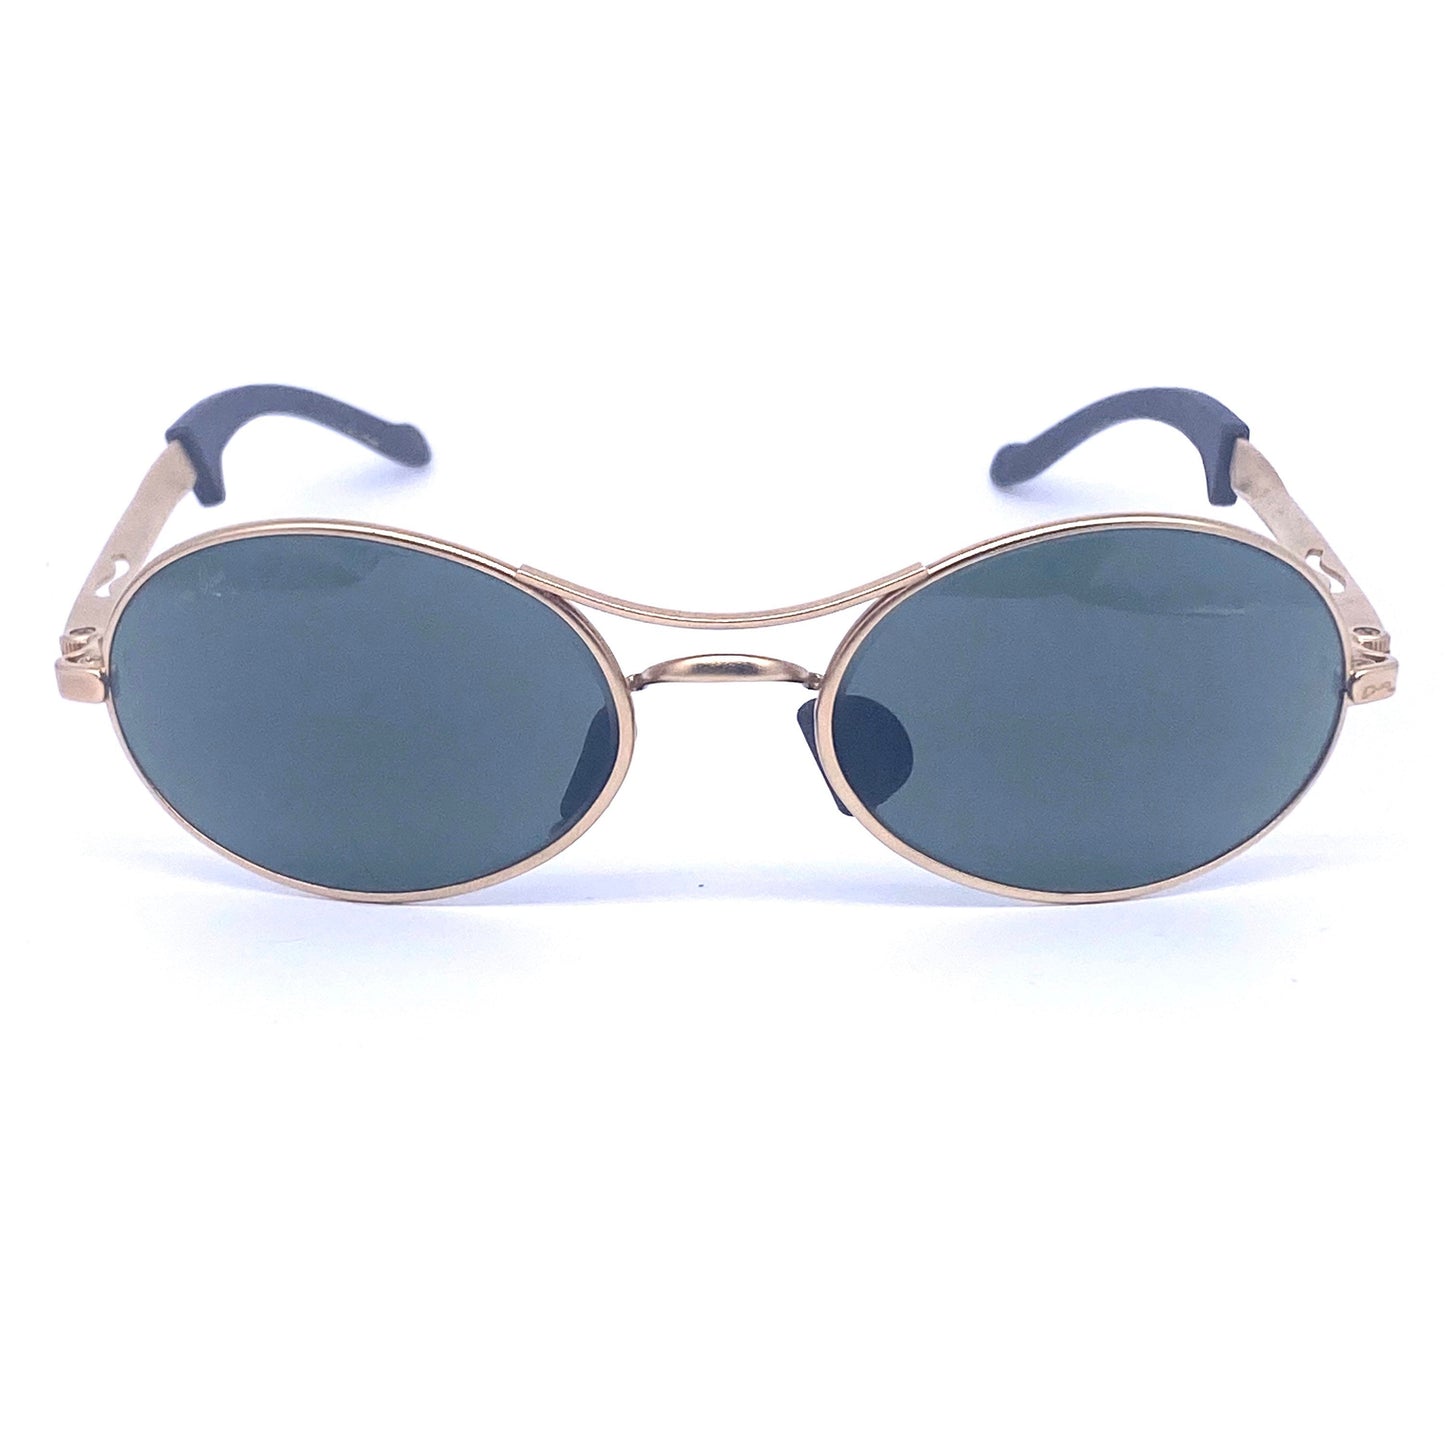 RayBan B&L Orbs oval matte golden metal sport sunglasses made in USA 1 –  OffBeatMilan